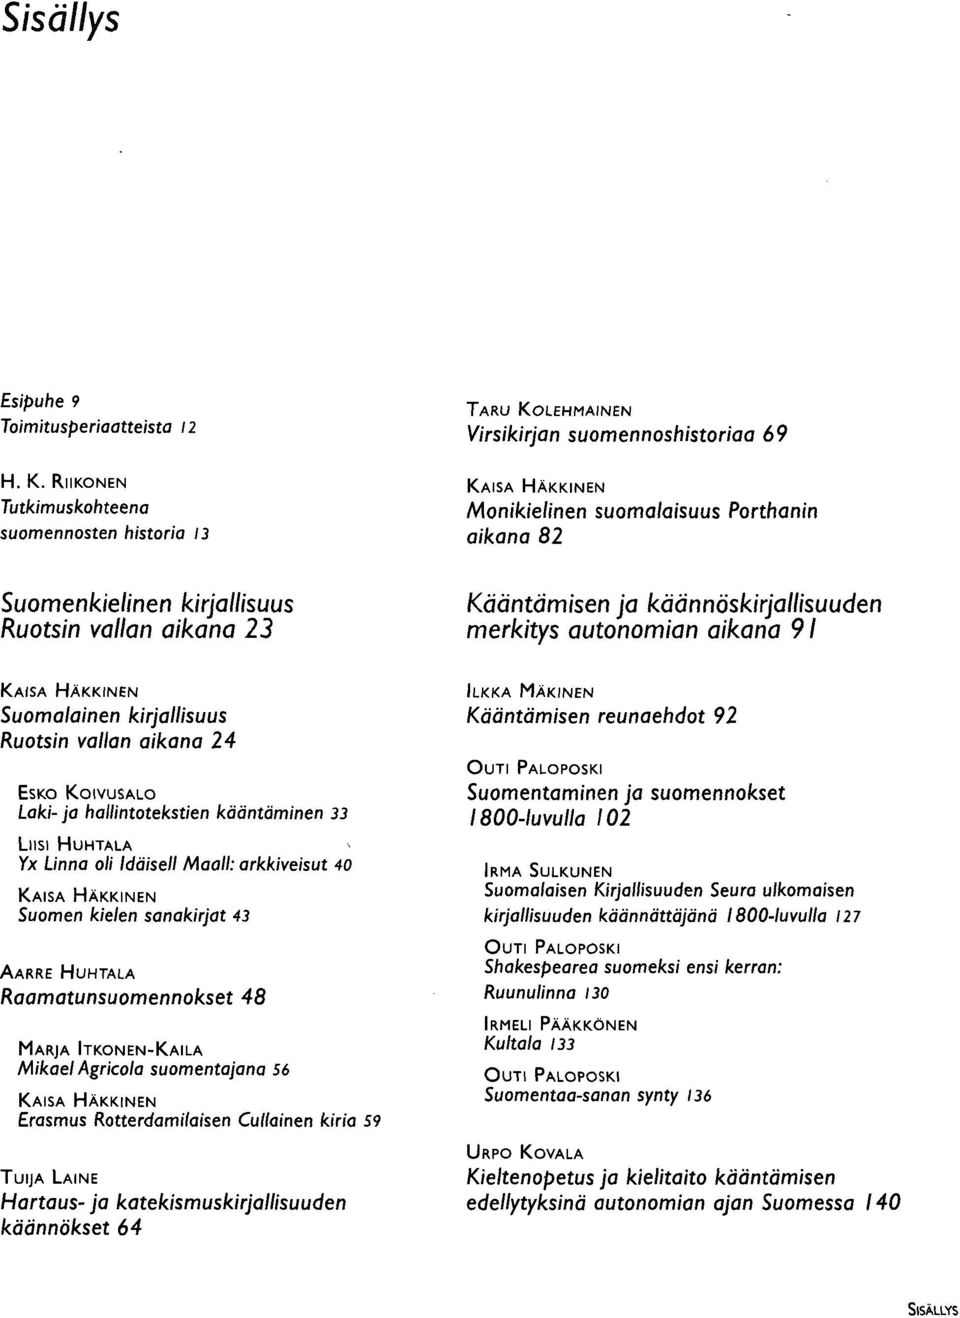 kääntäminen 33 LIISI HUHTALA Yx Linna oli Idäisell Maali: arkkiveisut 40 Suomen kielen sanakirjat 43 AARRE HUHTALA Raamatunsuomennokset 48 MARJA ITKONEN-KAILA Mikael Agricola suomentajana 56 Erasmus